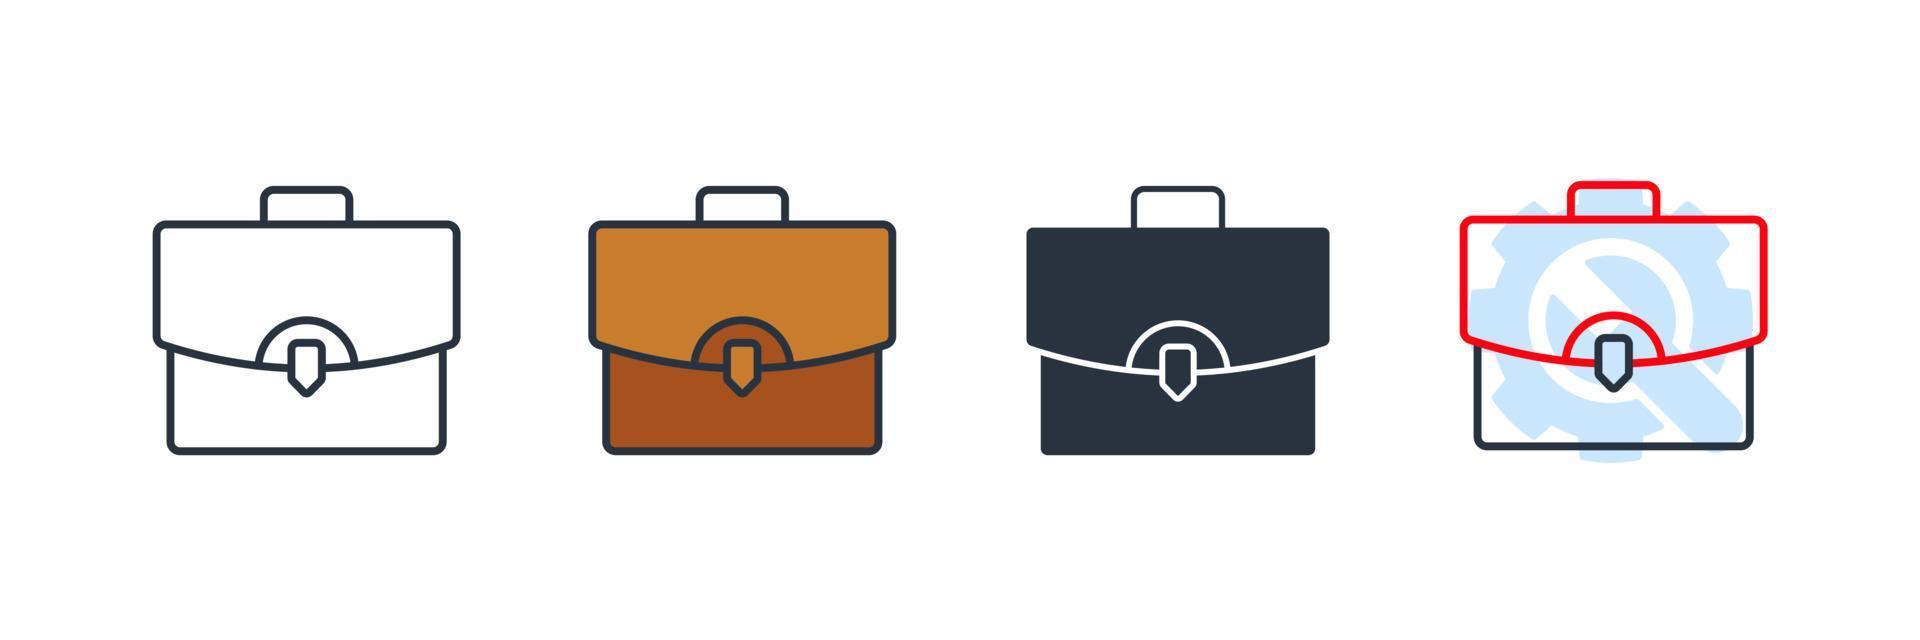 ilustração em vetor logotipo ícone maleta. modelo de símbolo de portfólio para coleção de design gráfico e web